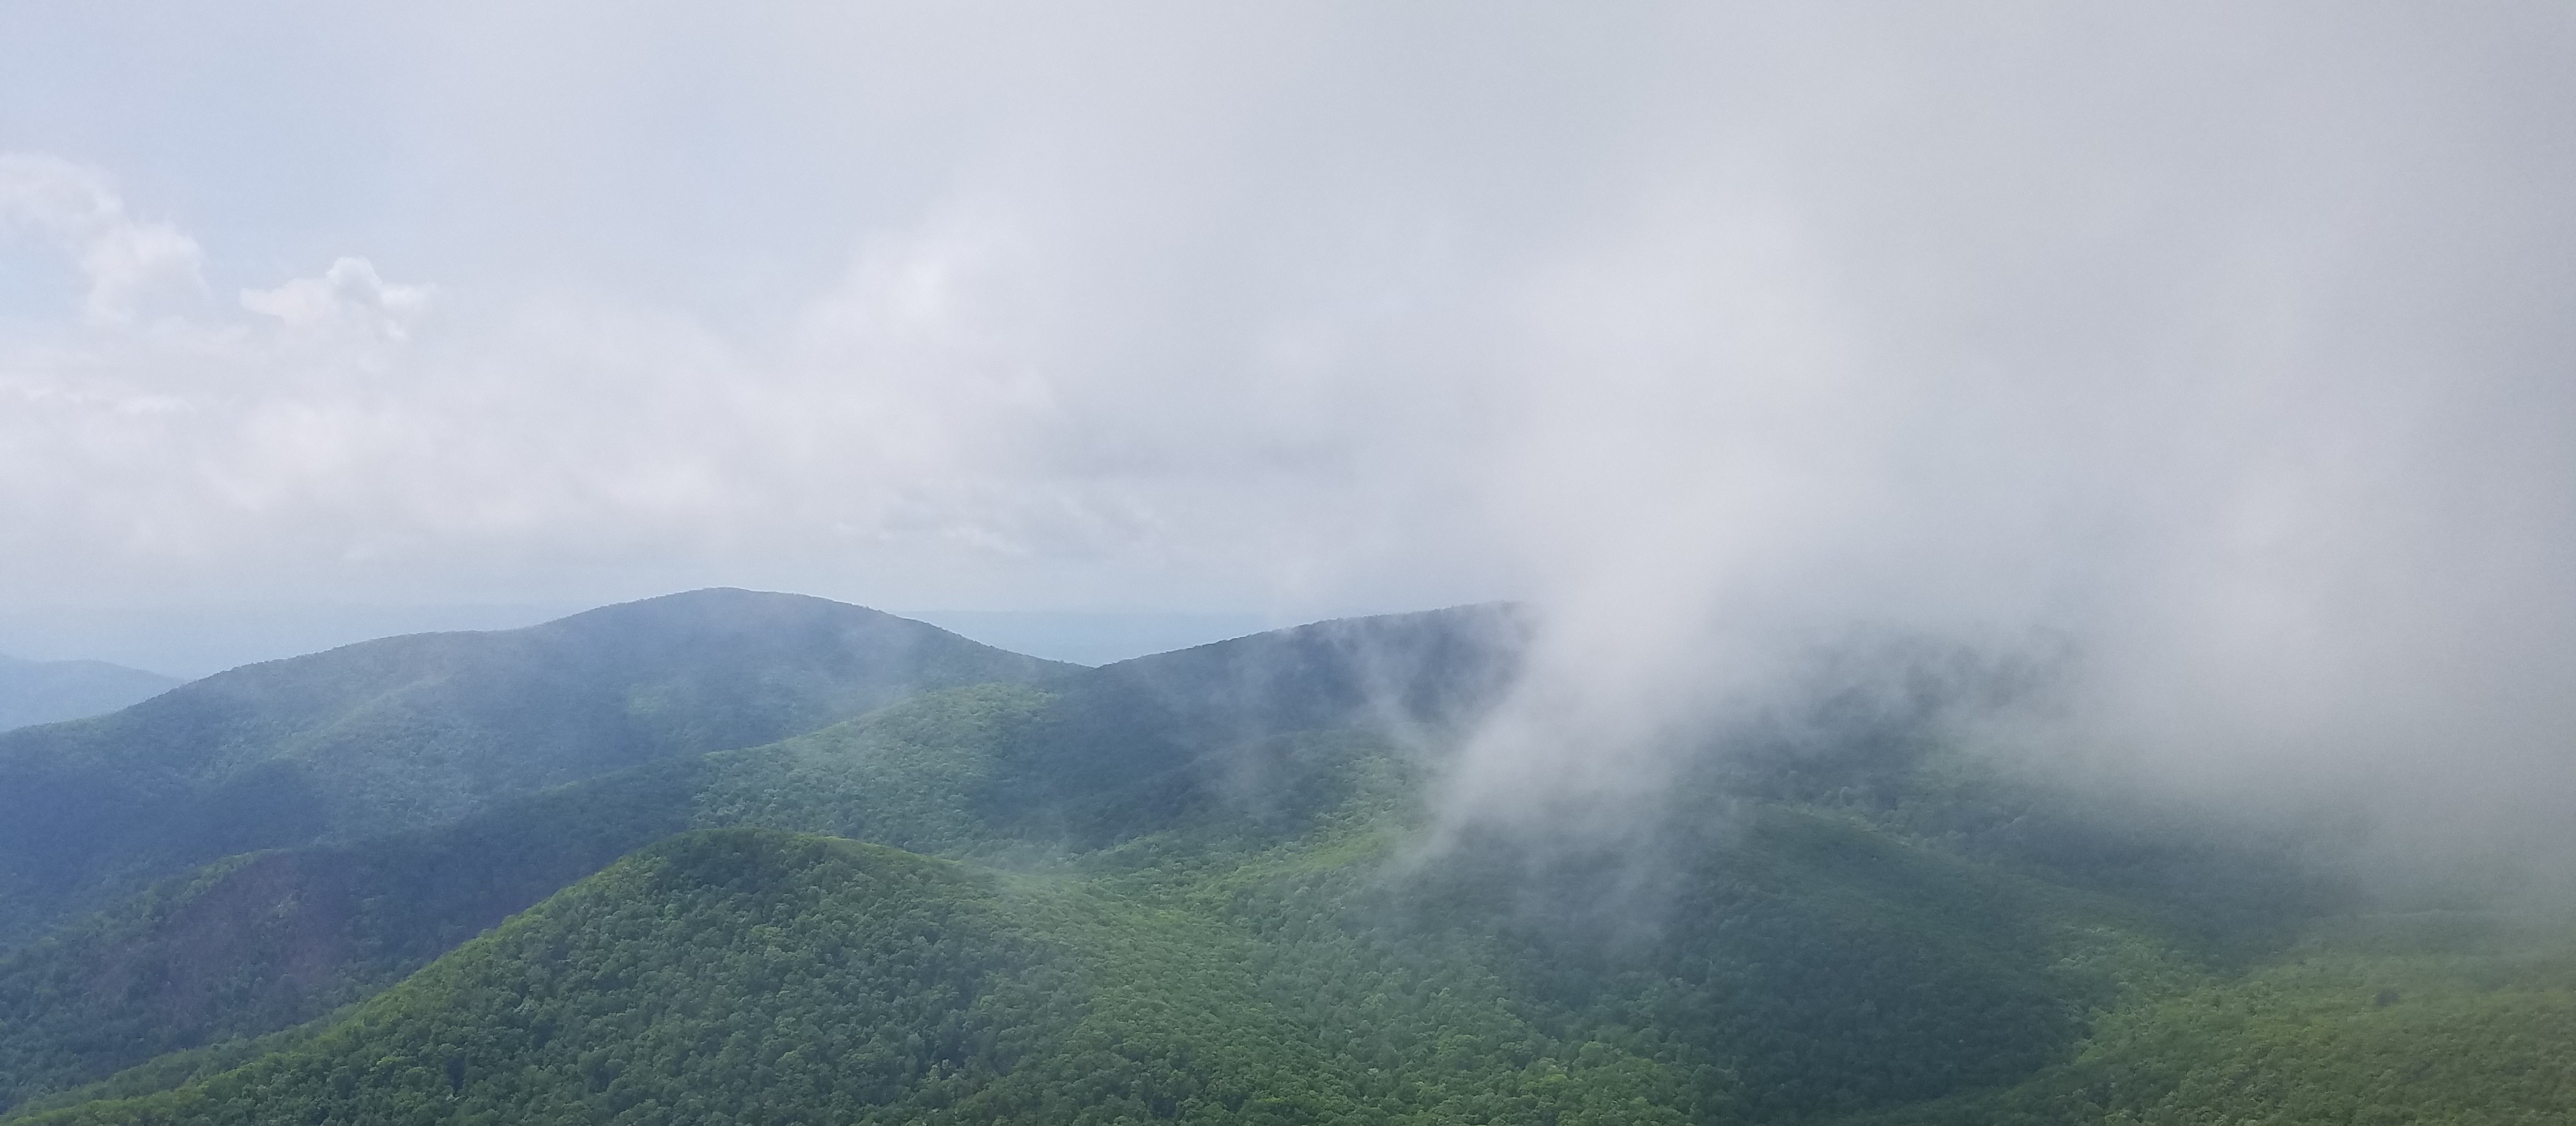 blue ridge mountains and fog encroaching